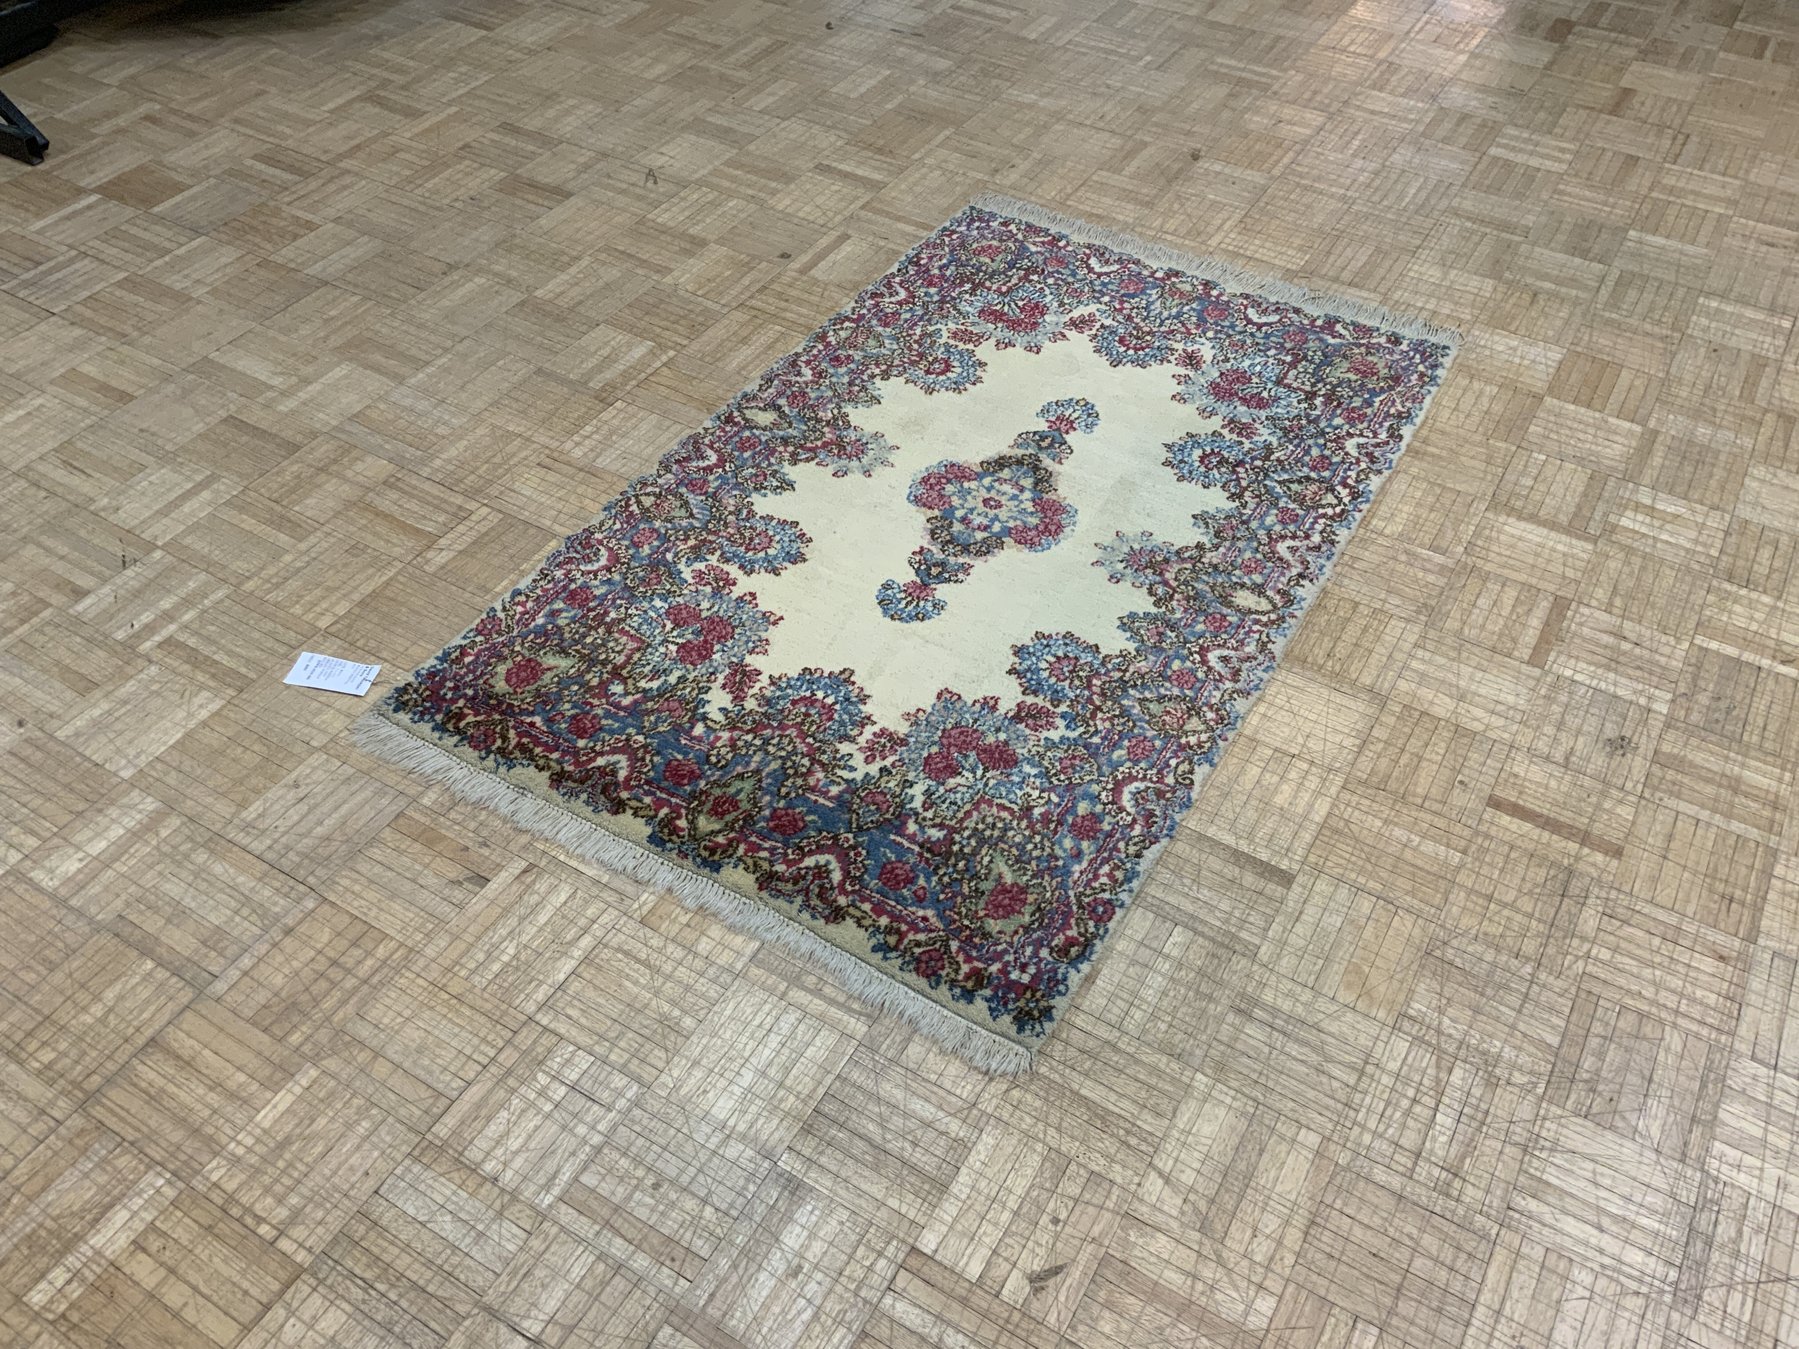 David Tiftickjian & Sons, oriental rugs, Buffalo rugs, oriental rug dealers Buffalo, Buffalo flooring, modern rugs, new rugs, used rugs, vintage rugs